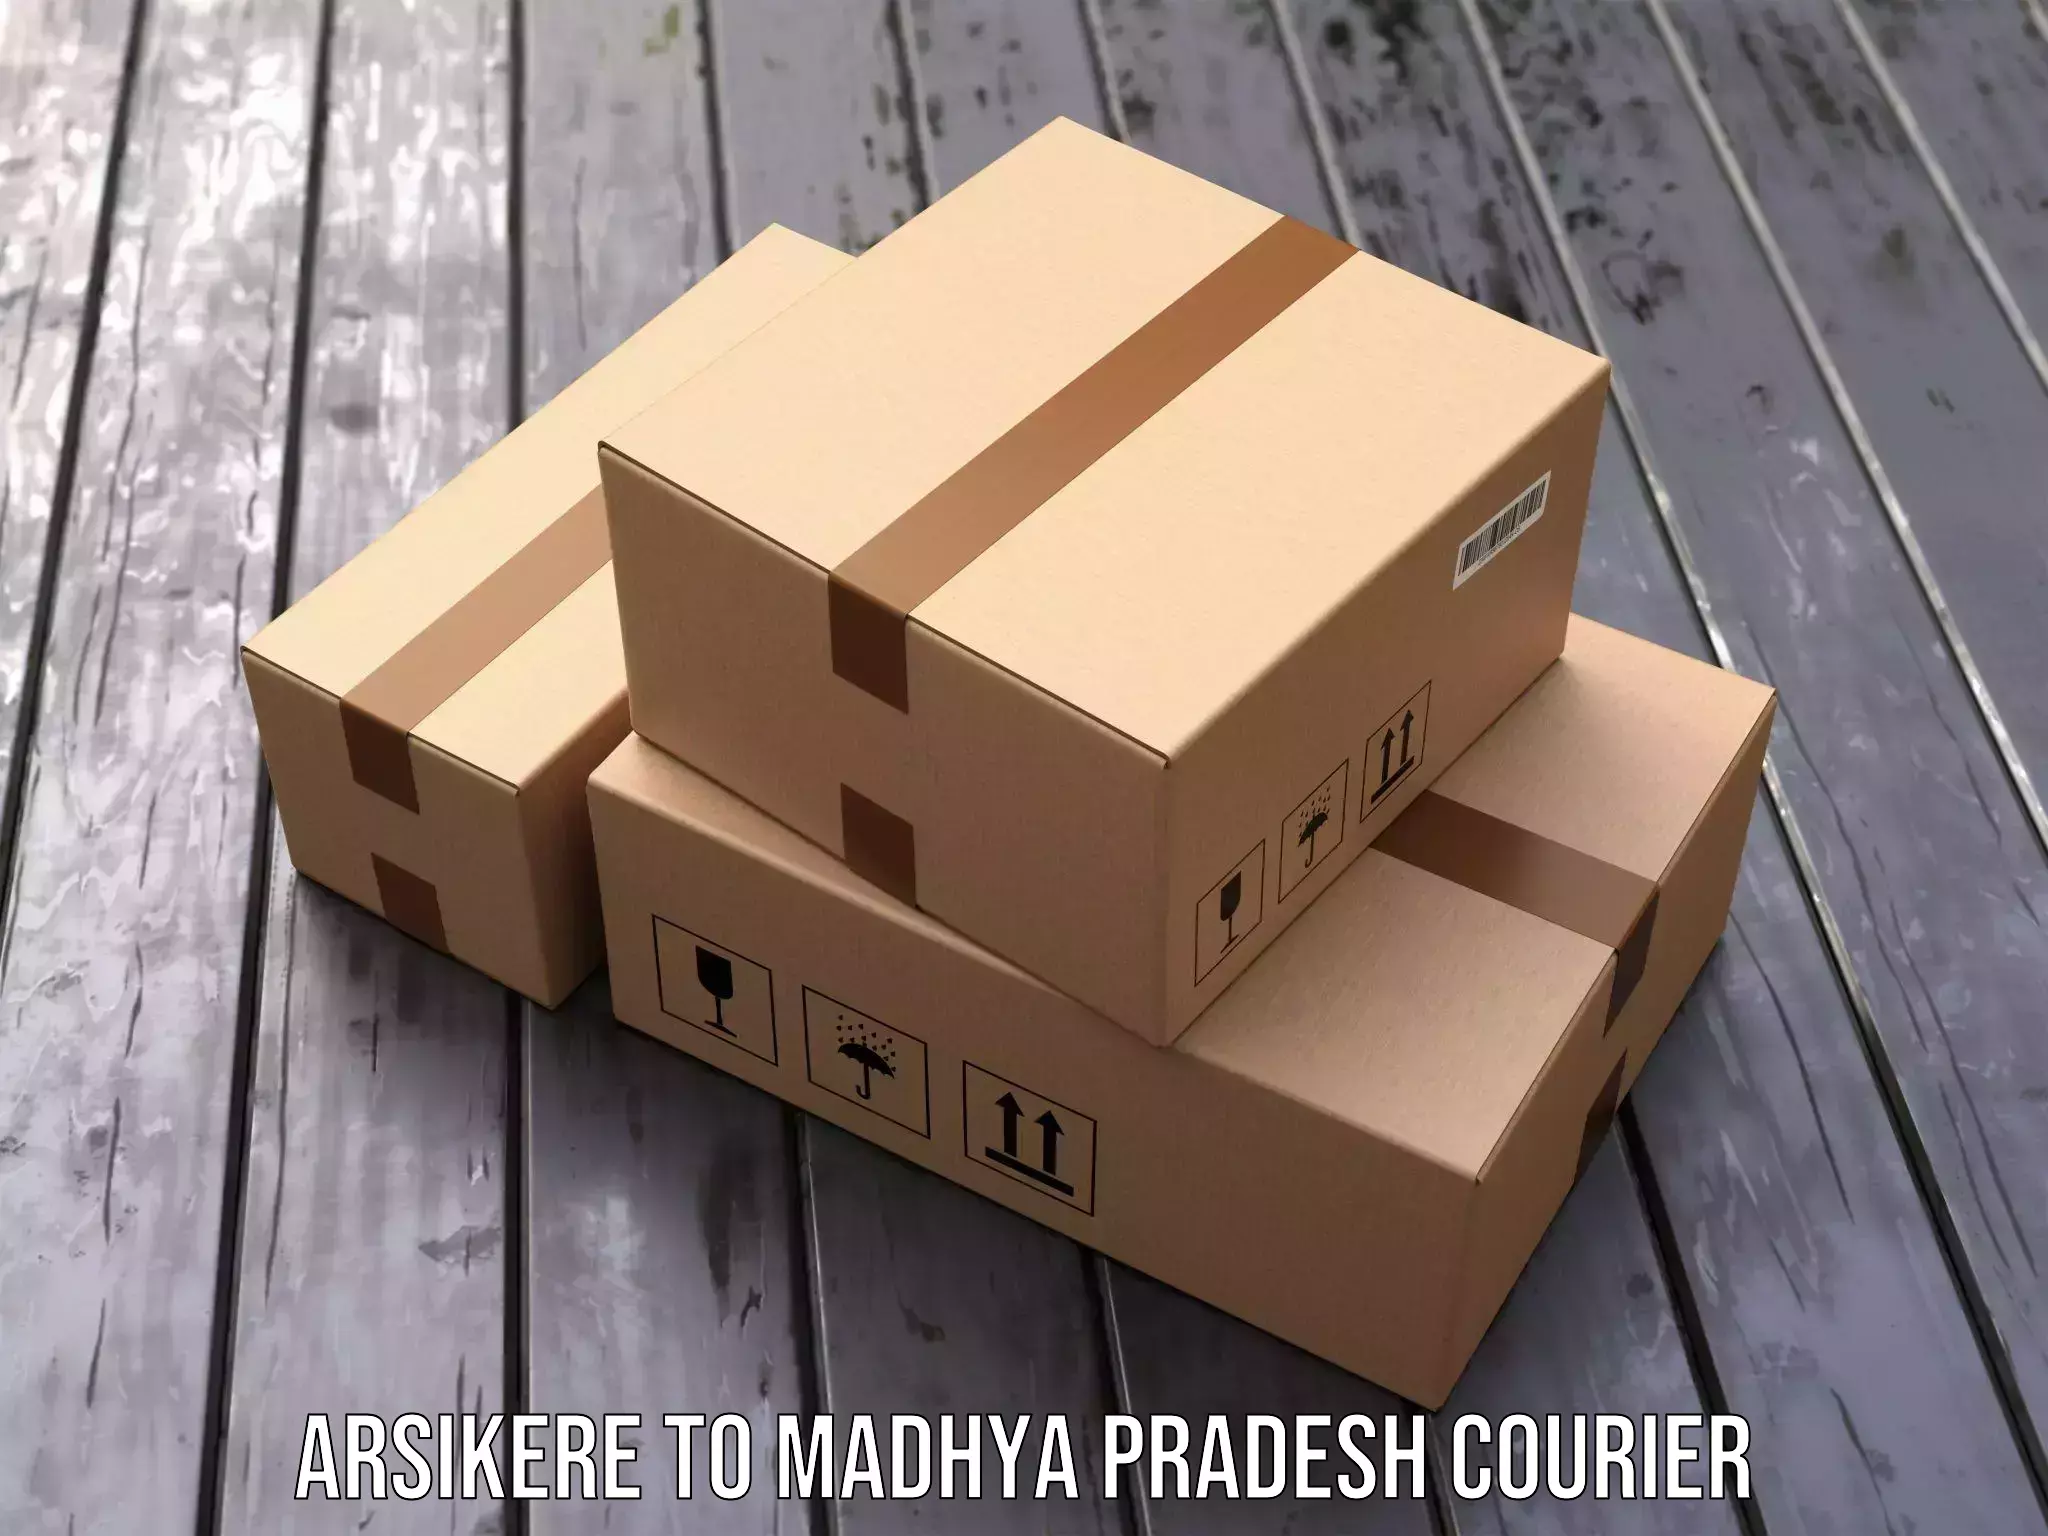 Courier service comparison Arsikere to Sohagi